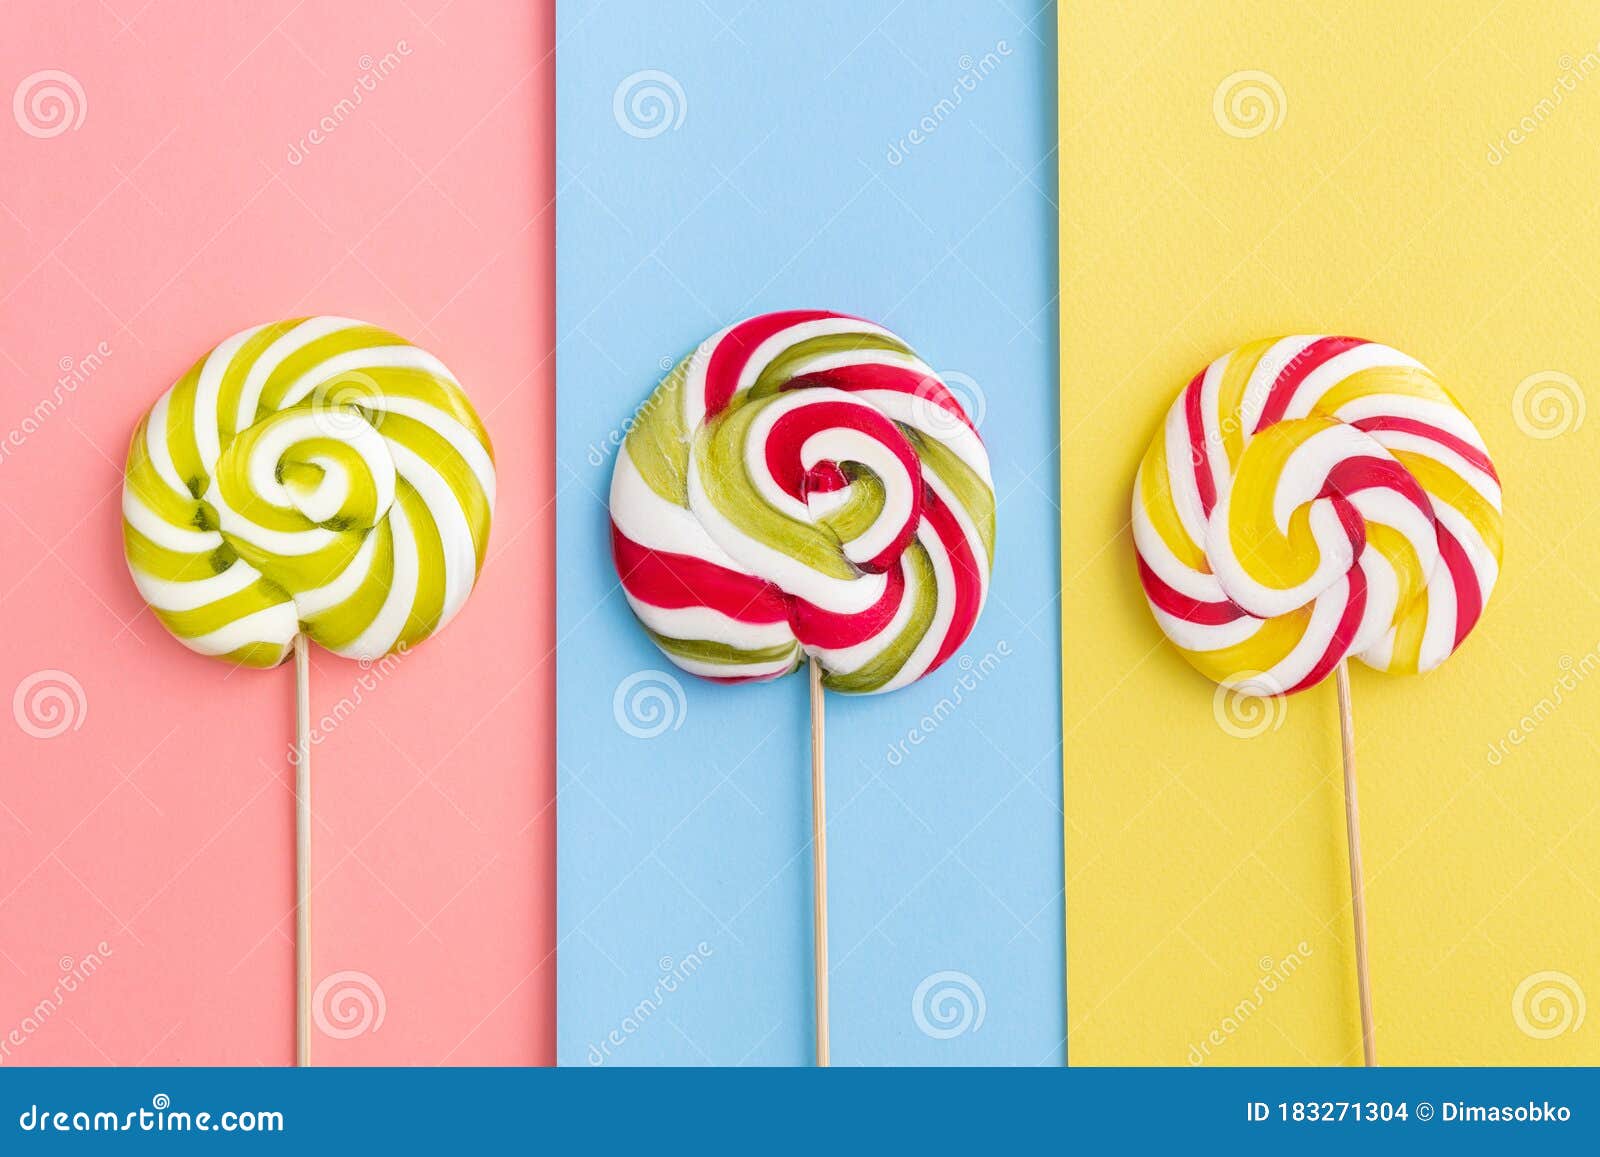 Caramelos De Lollypops En Colores Pastel De Moda Foto de archivo - Imagen  de bocado, grande: 183271304